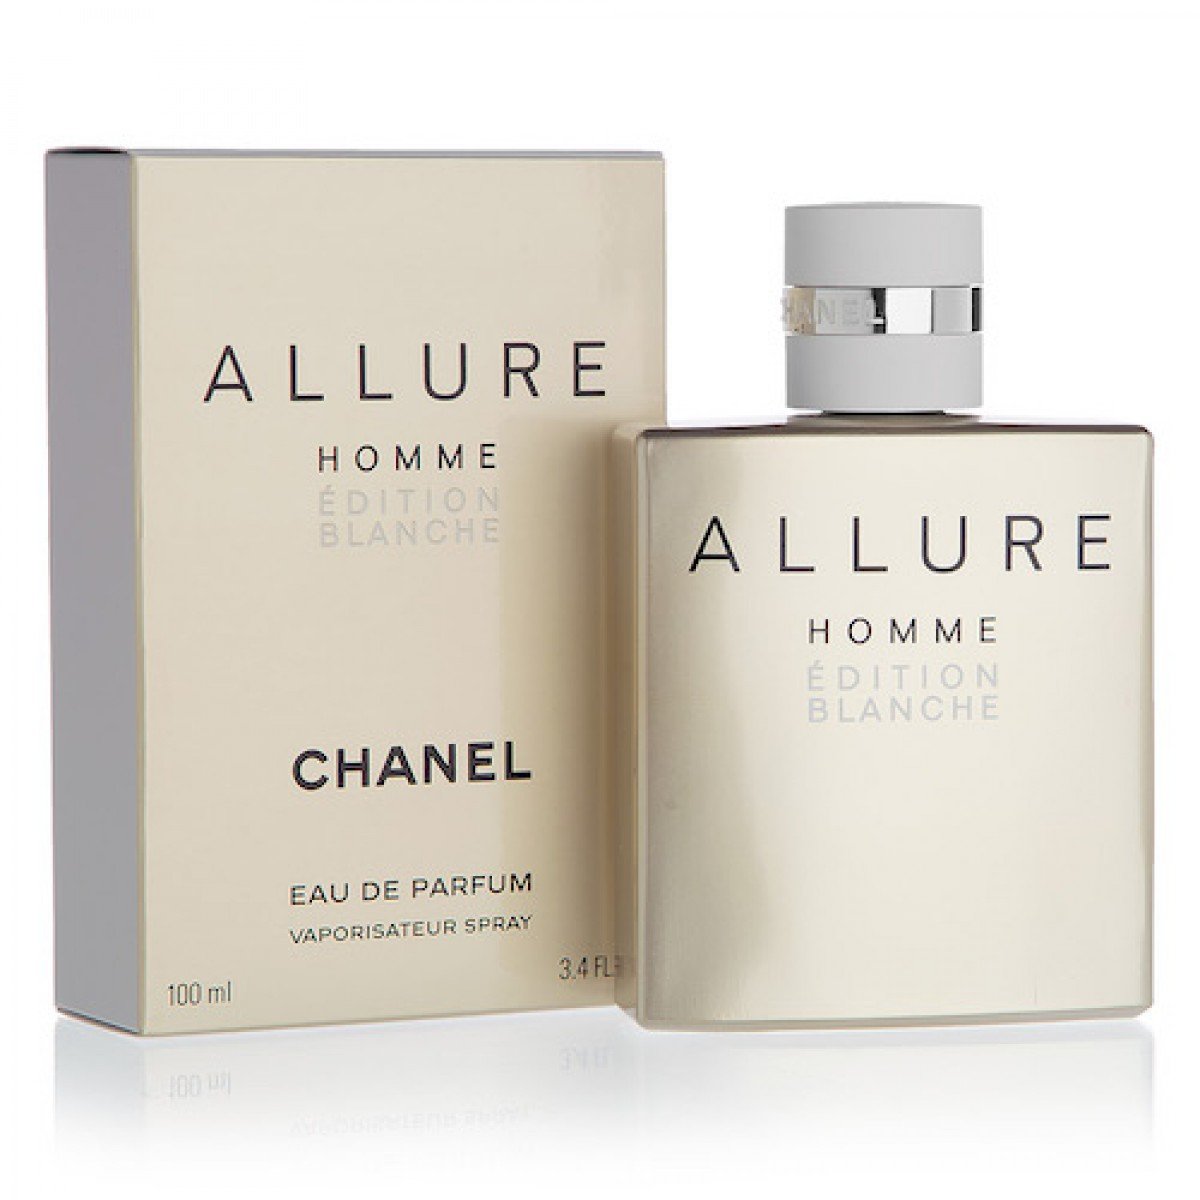 Туалетная вода allure chanel. Chanel Allure homme Edition Blanche 100ml. Chanel Allure homme Edition Edition. Chanel Allure homme 100 ml. Chanel Allure homme Edition Blanche Eau de Parfum.